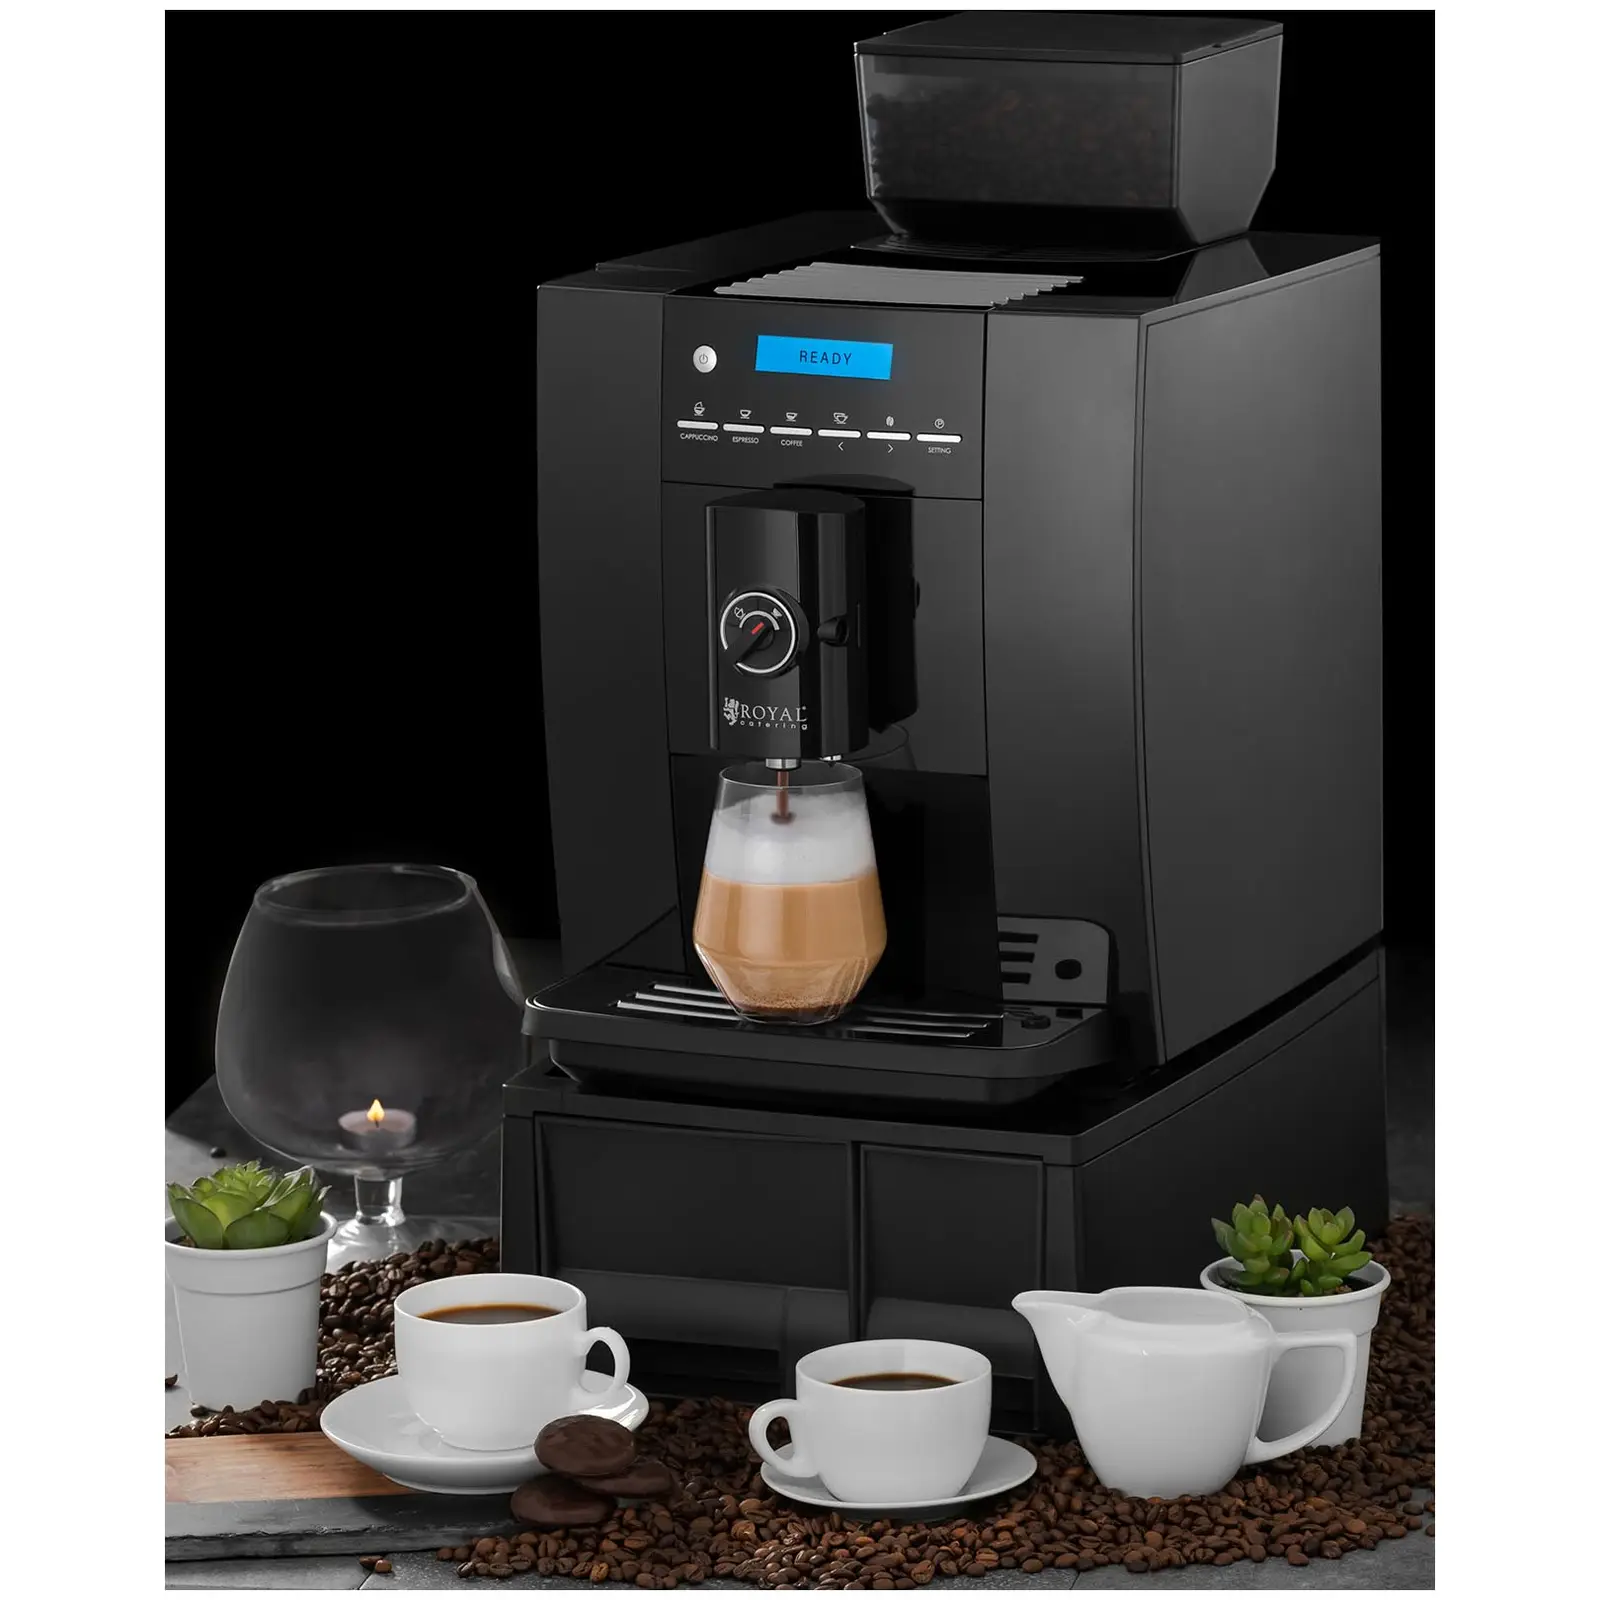 Teljesen automatikus kávéfőző - legfeljebb 750 g kávészem - tejhabosító